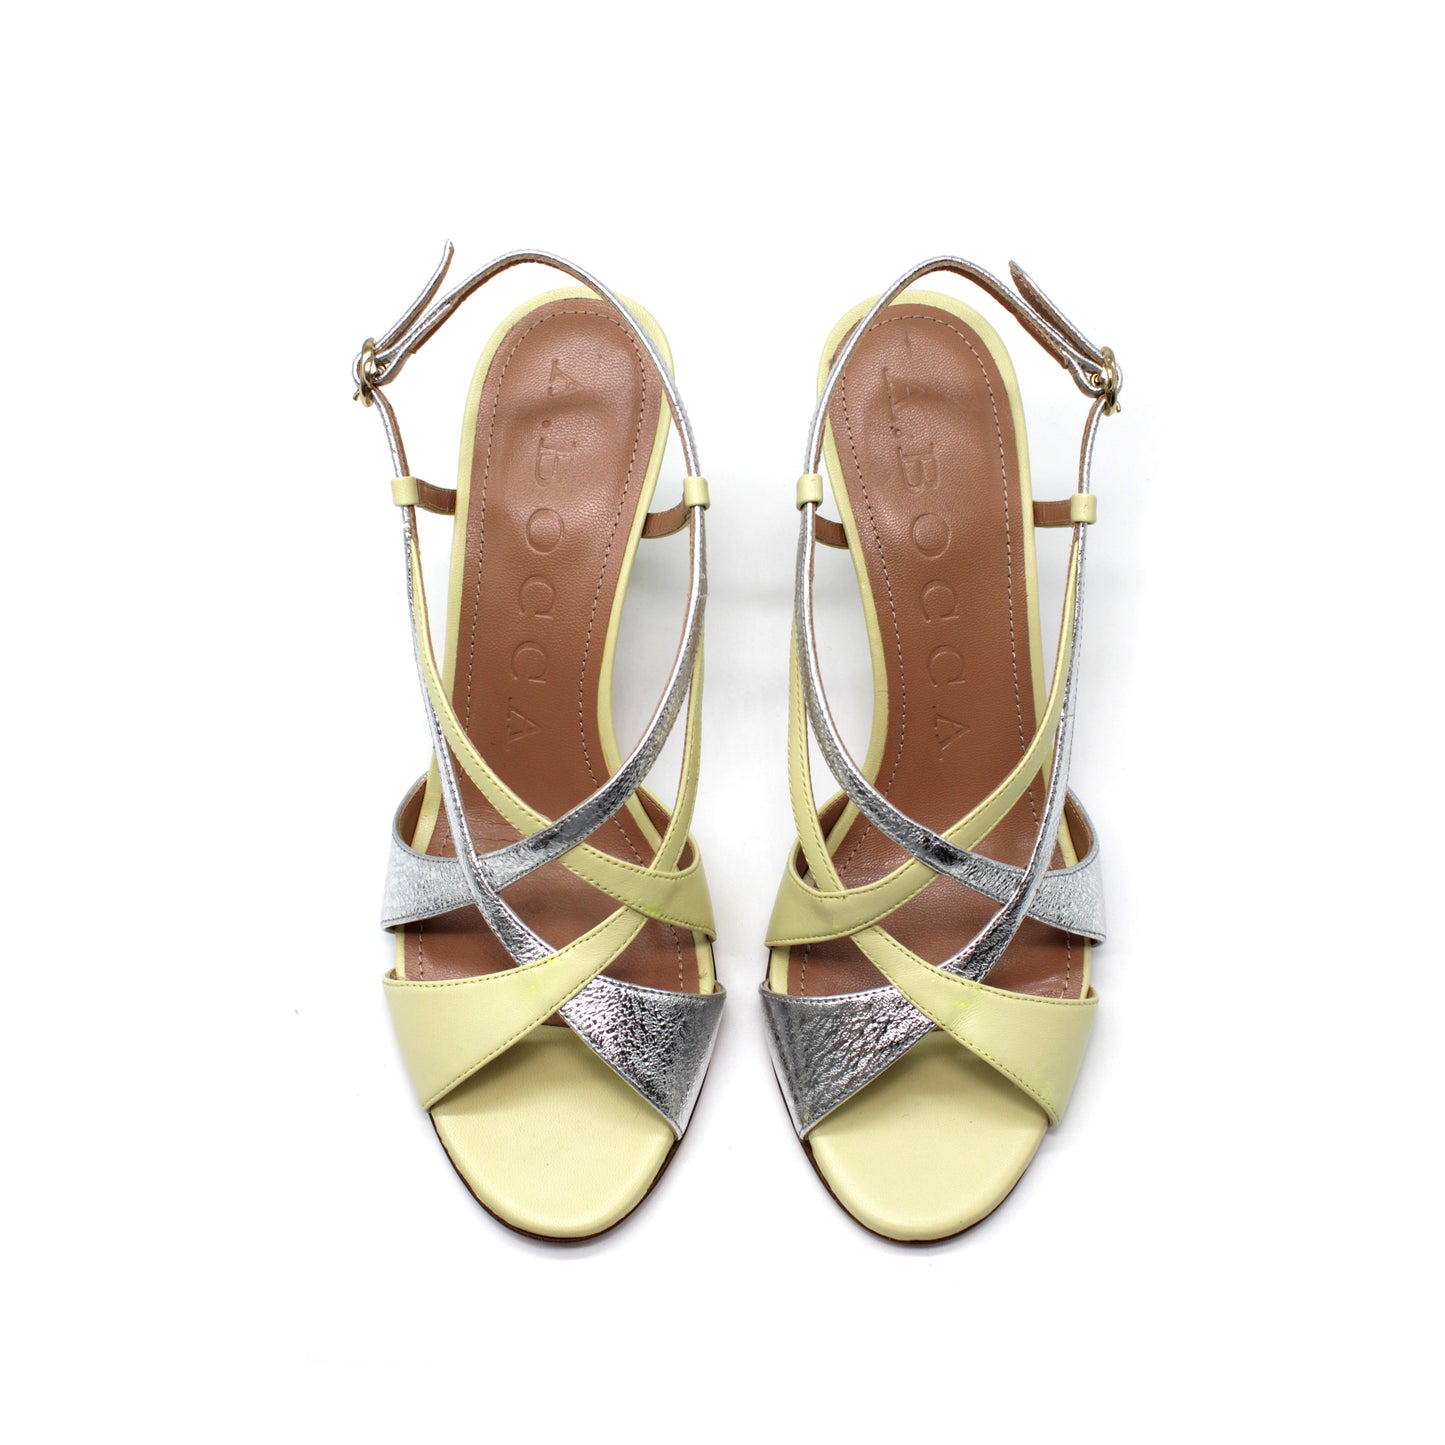 Sandalo in nappa color paglierino/argento - Second life